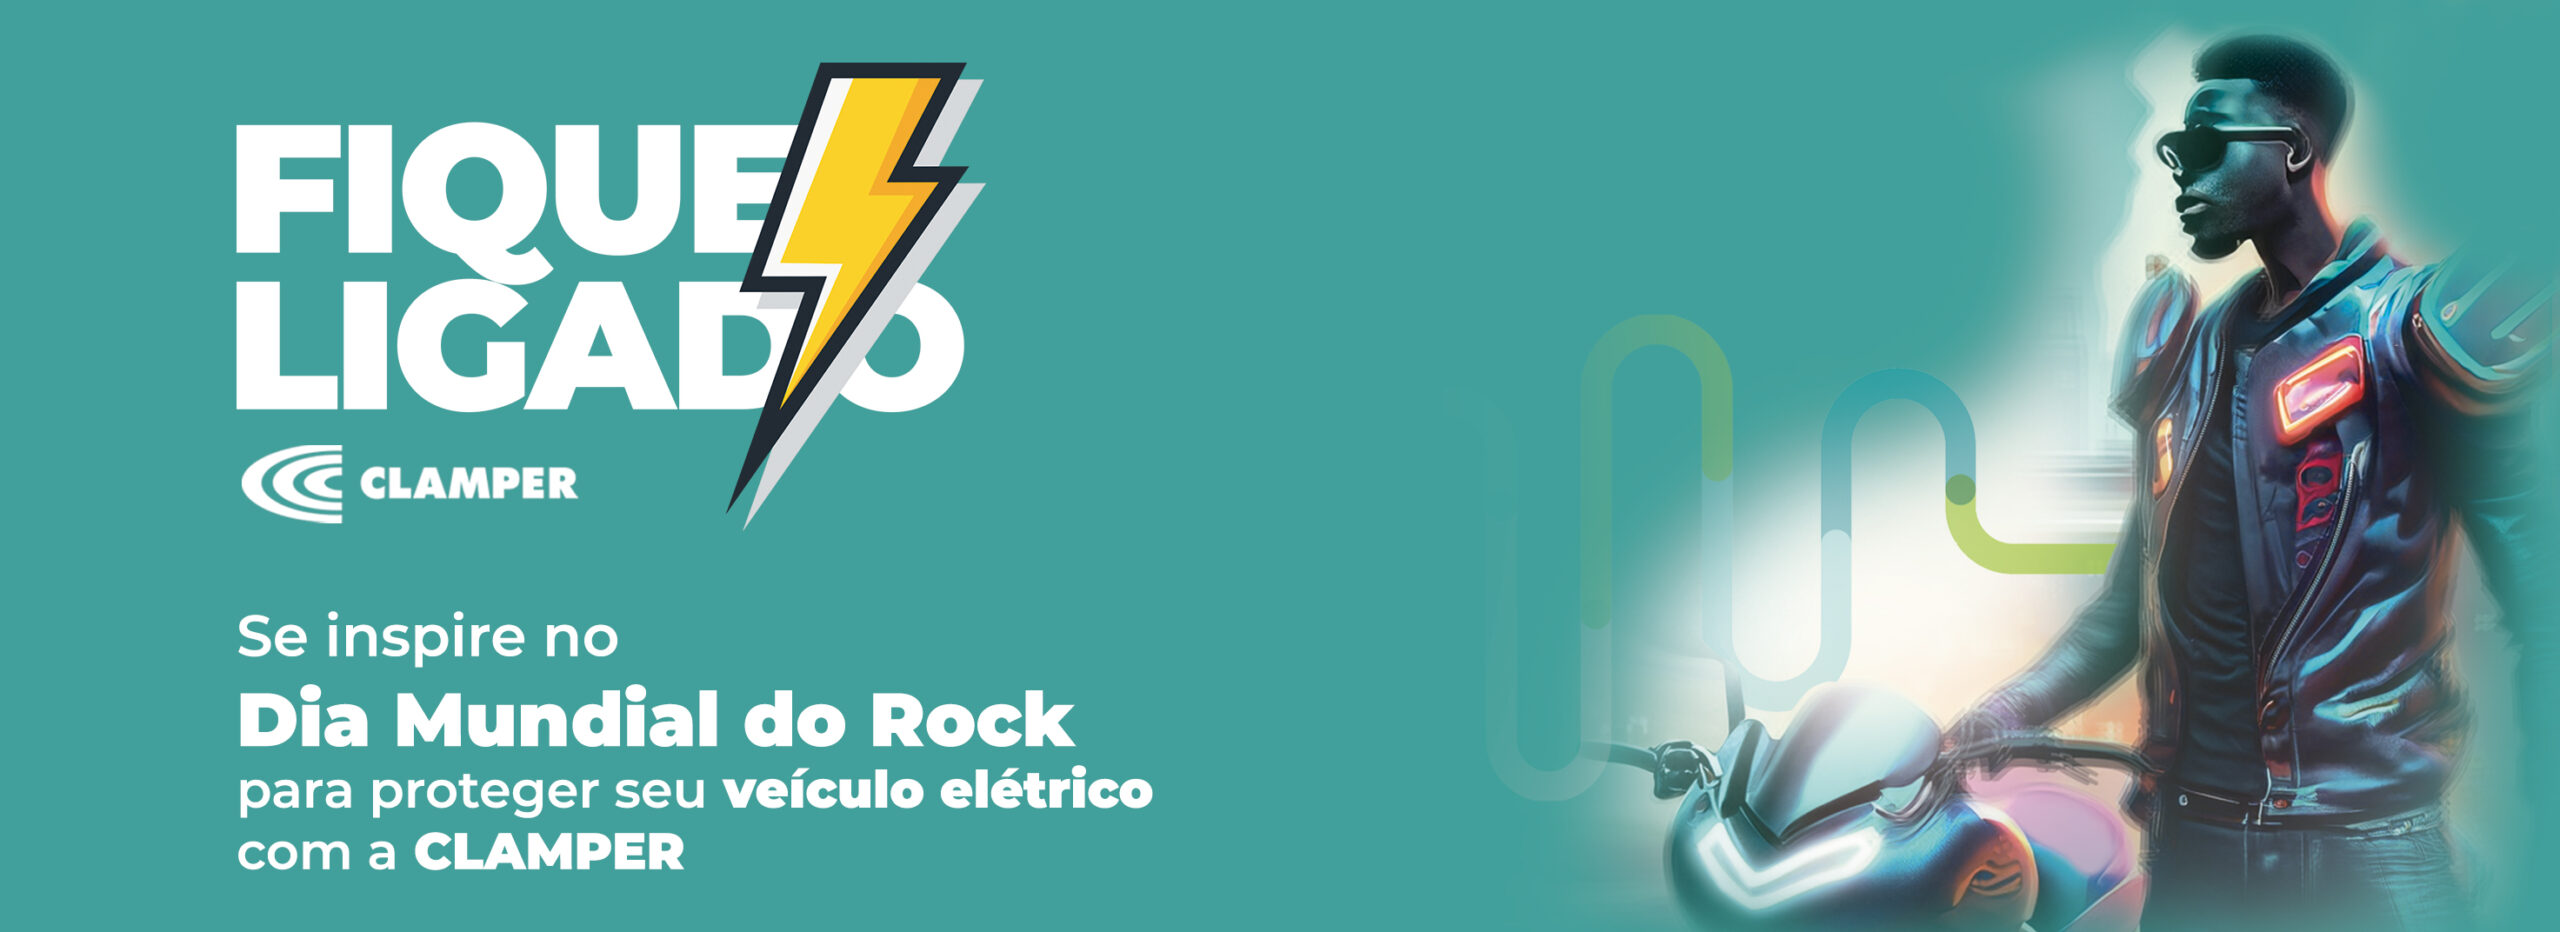 Se inspire no Dia Mundial do Rock para proteger seu veículo elétrico com a CLAMPER